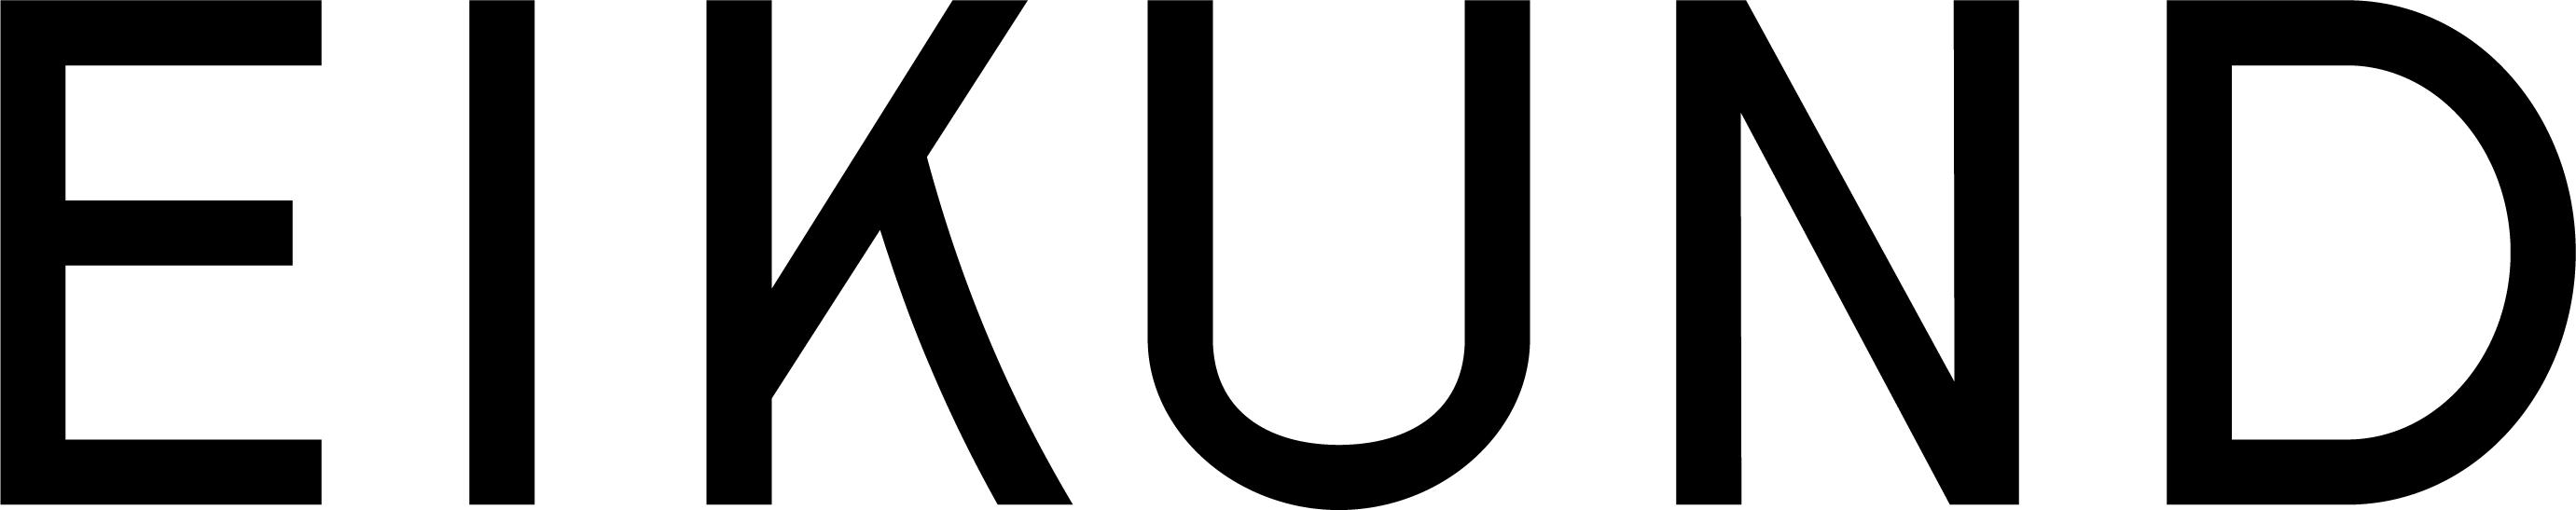 eikund logo